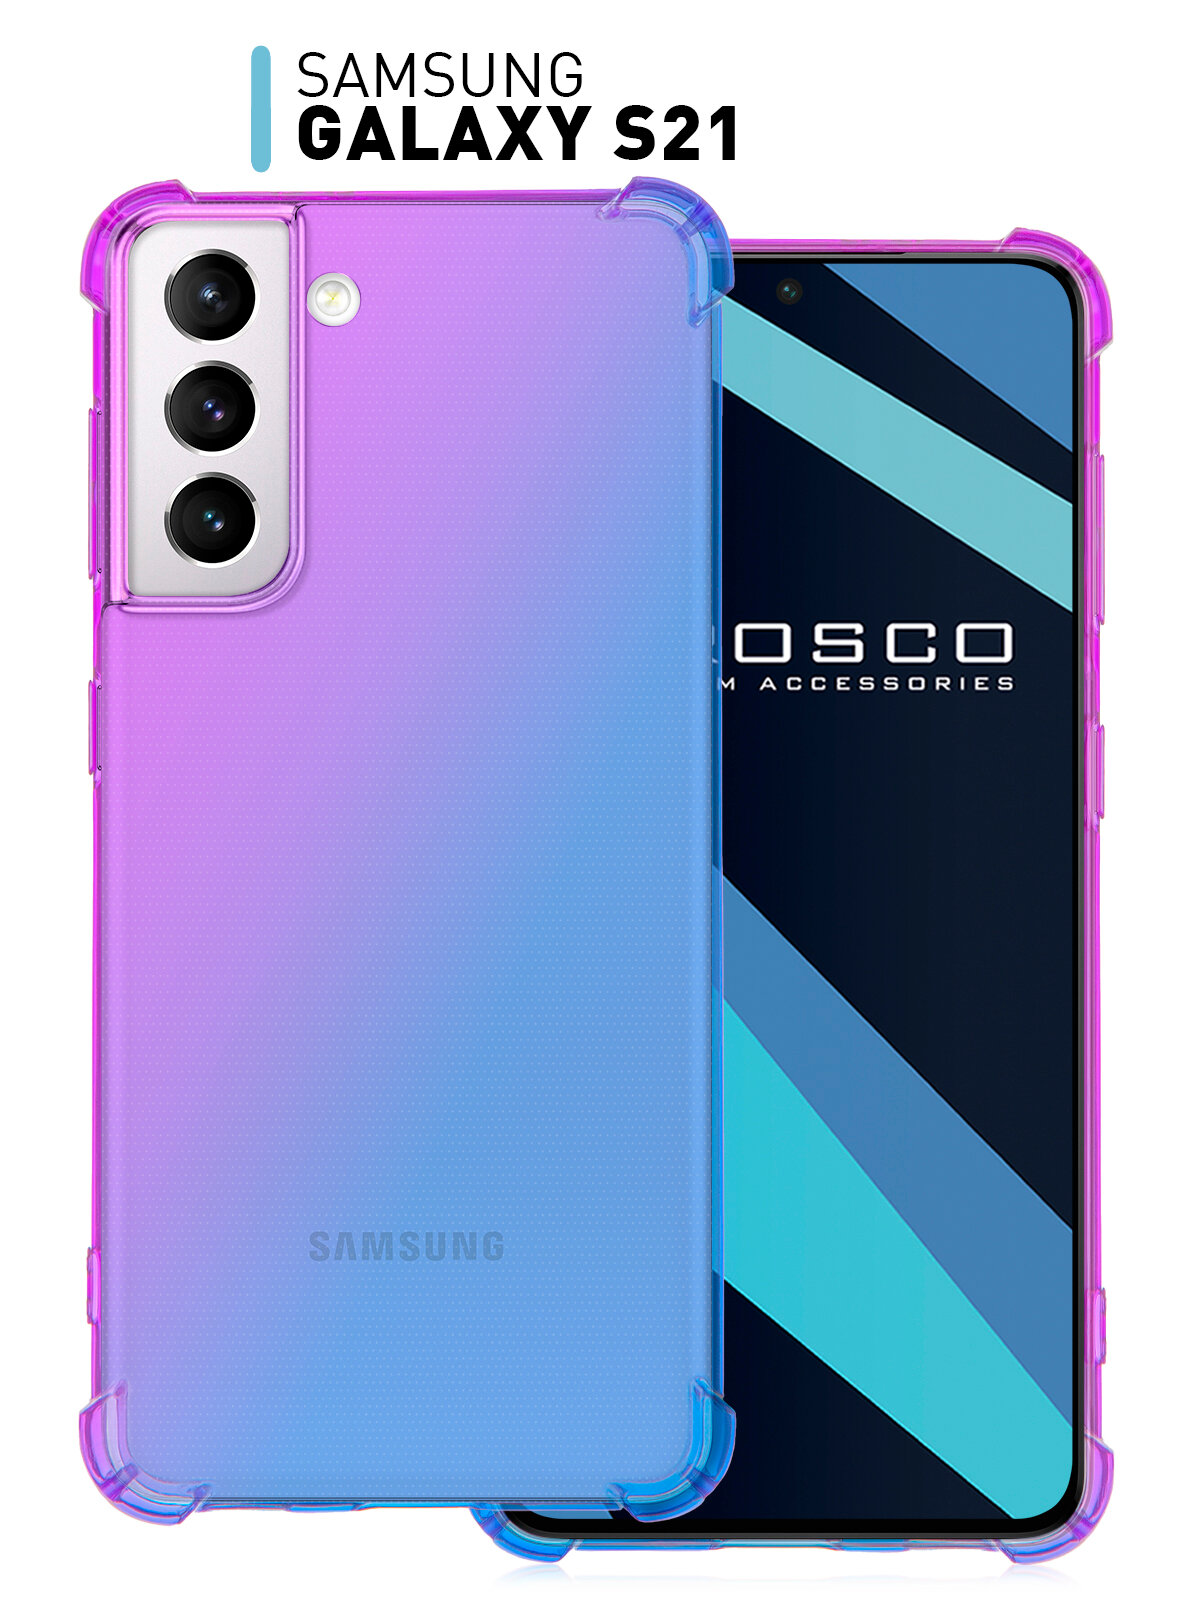 Противоударный чехол-накладка для Samsung Galaxy S21 (Самсунг Галакси С21) силиконовый усиленный защита камеры прозрачный фиолетовый синий ROSCO